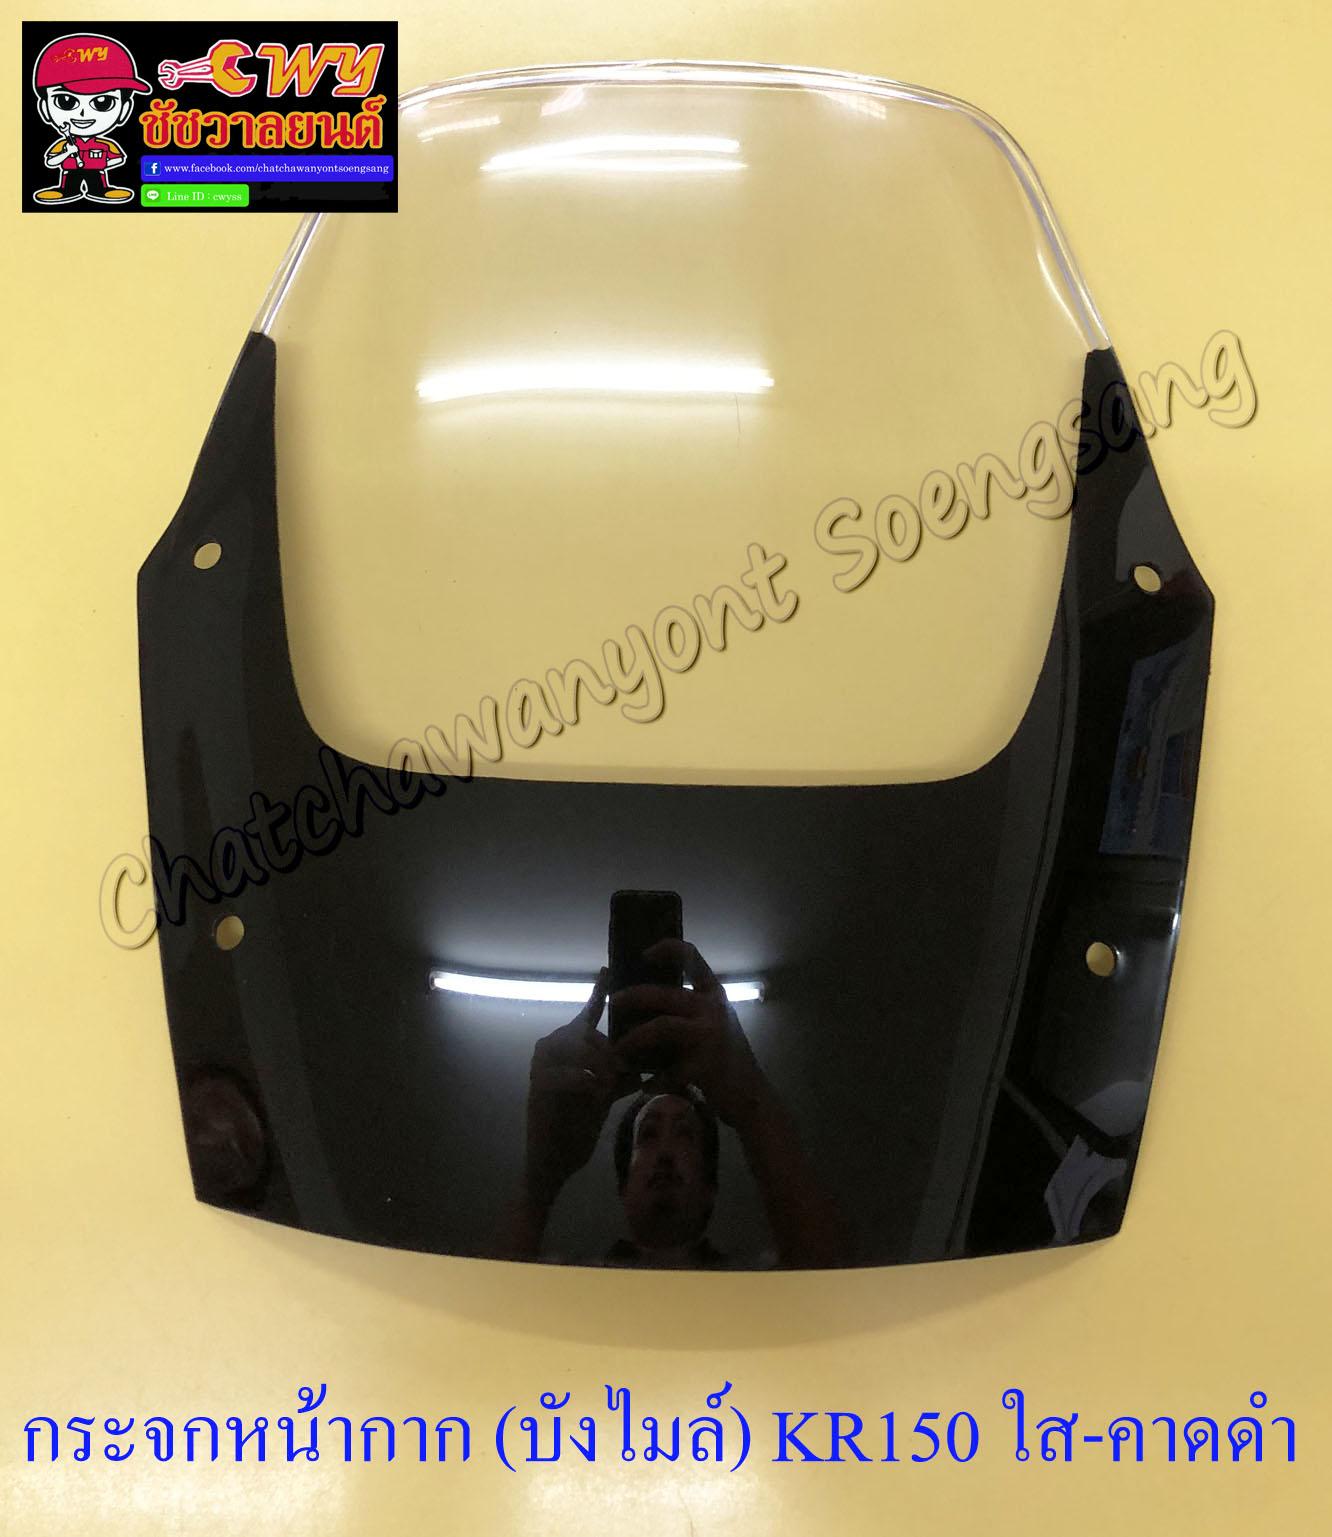 กระจกหน้ากาก (บังไมล์) KR150 อย่างดี สีใส-คาดดำ เจาะรู (13545)